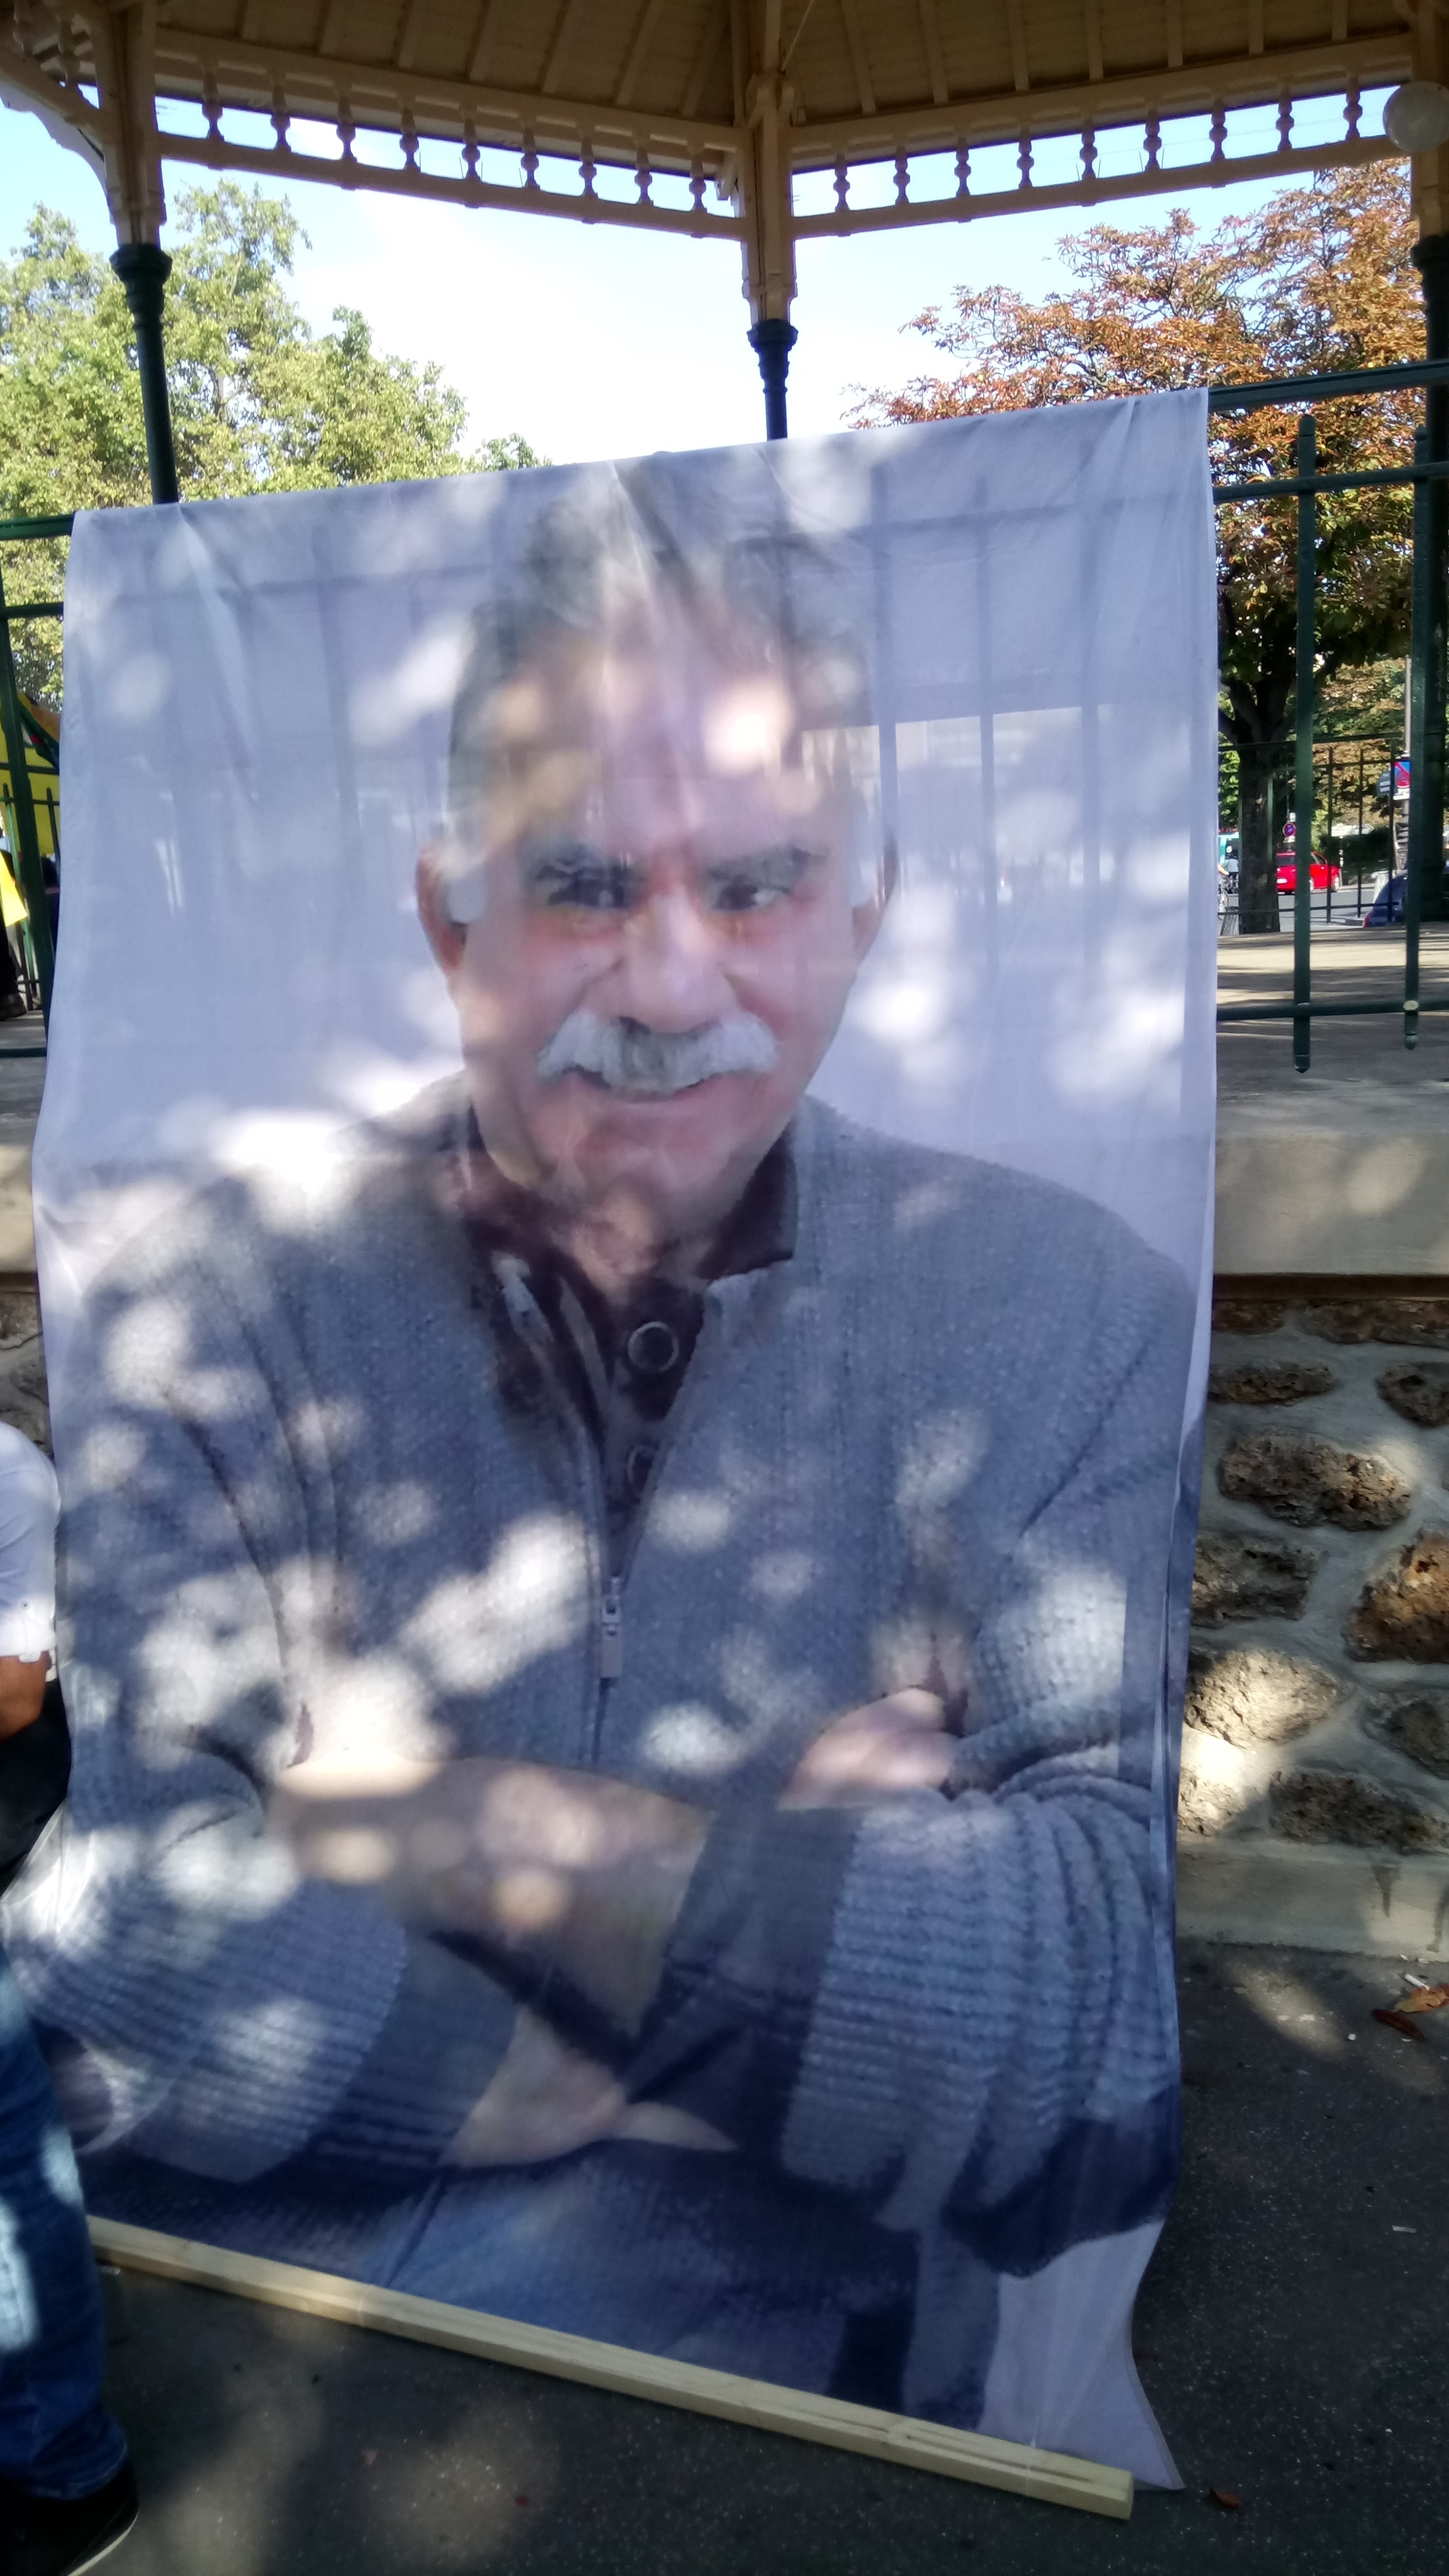 Marche kurde à Paris : La Kabylie présente, en soutien à 